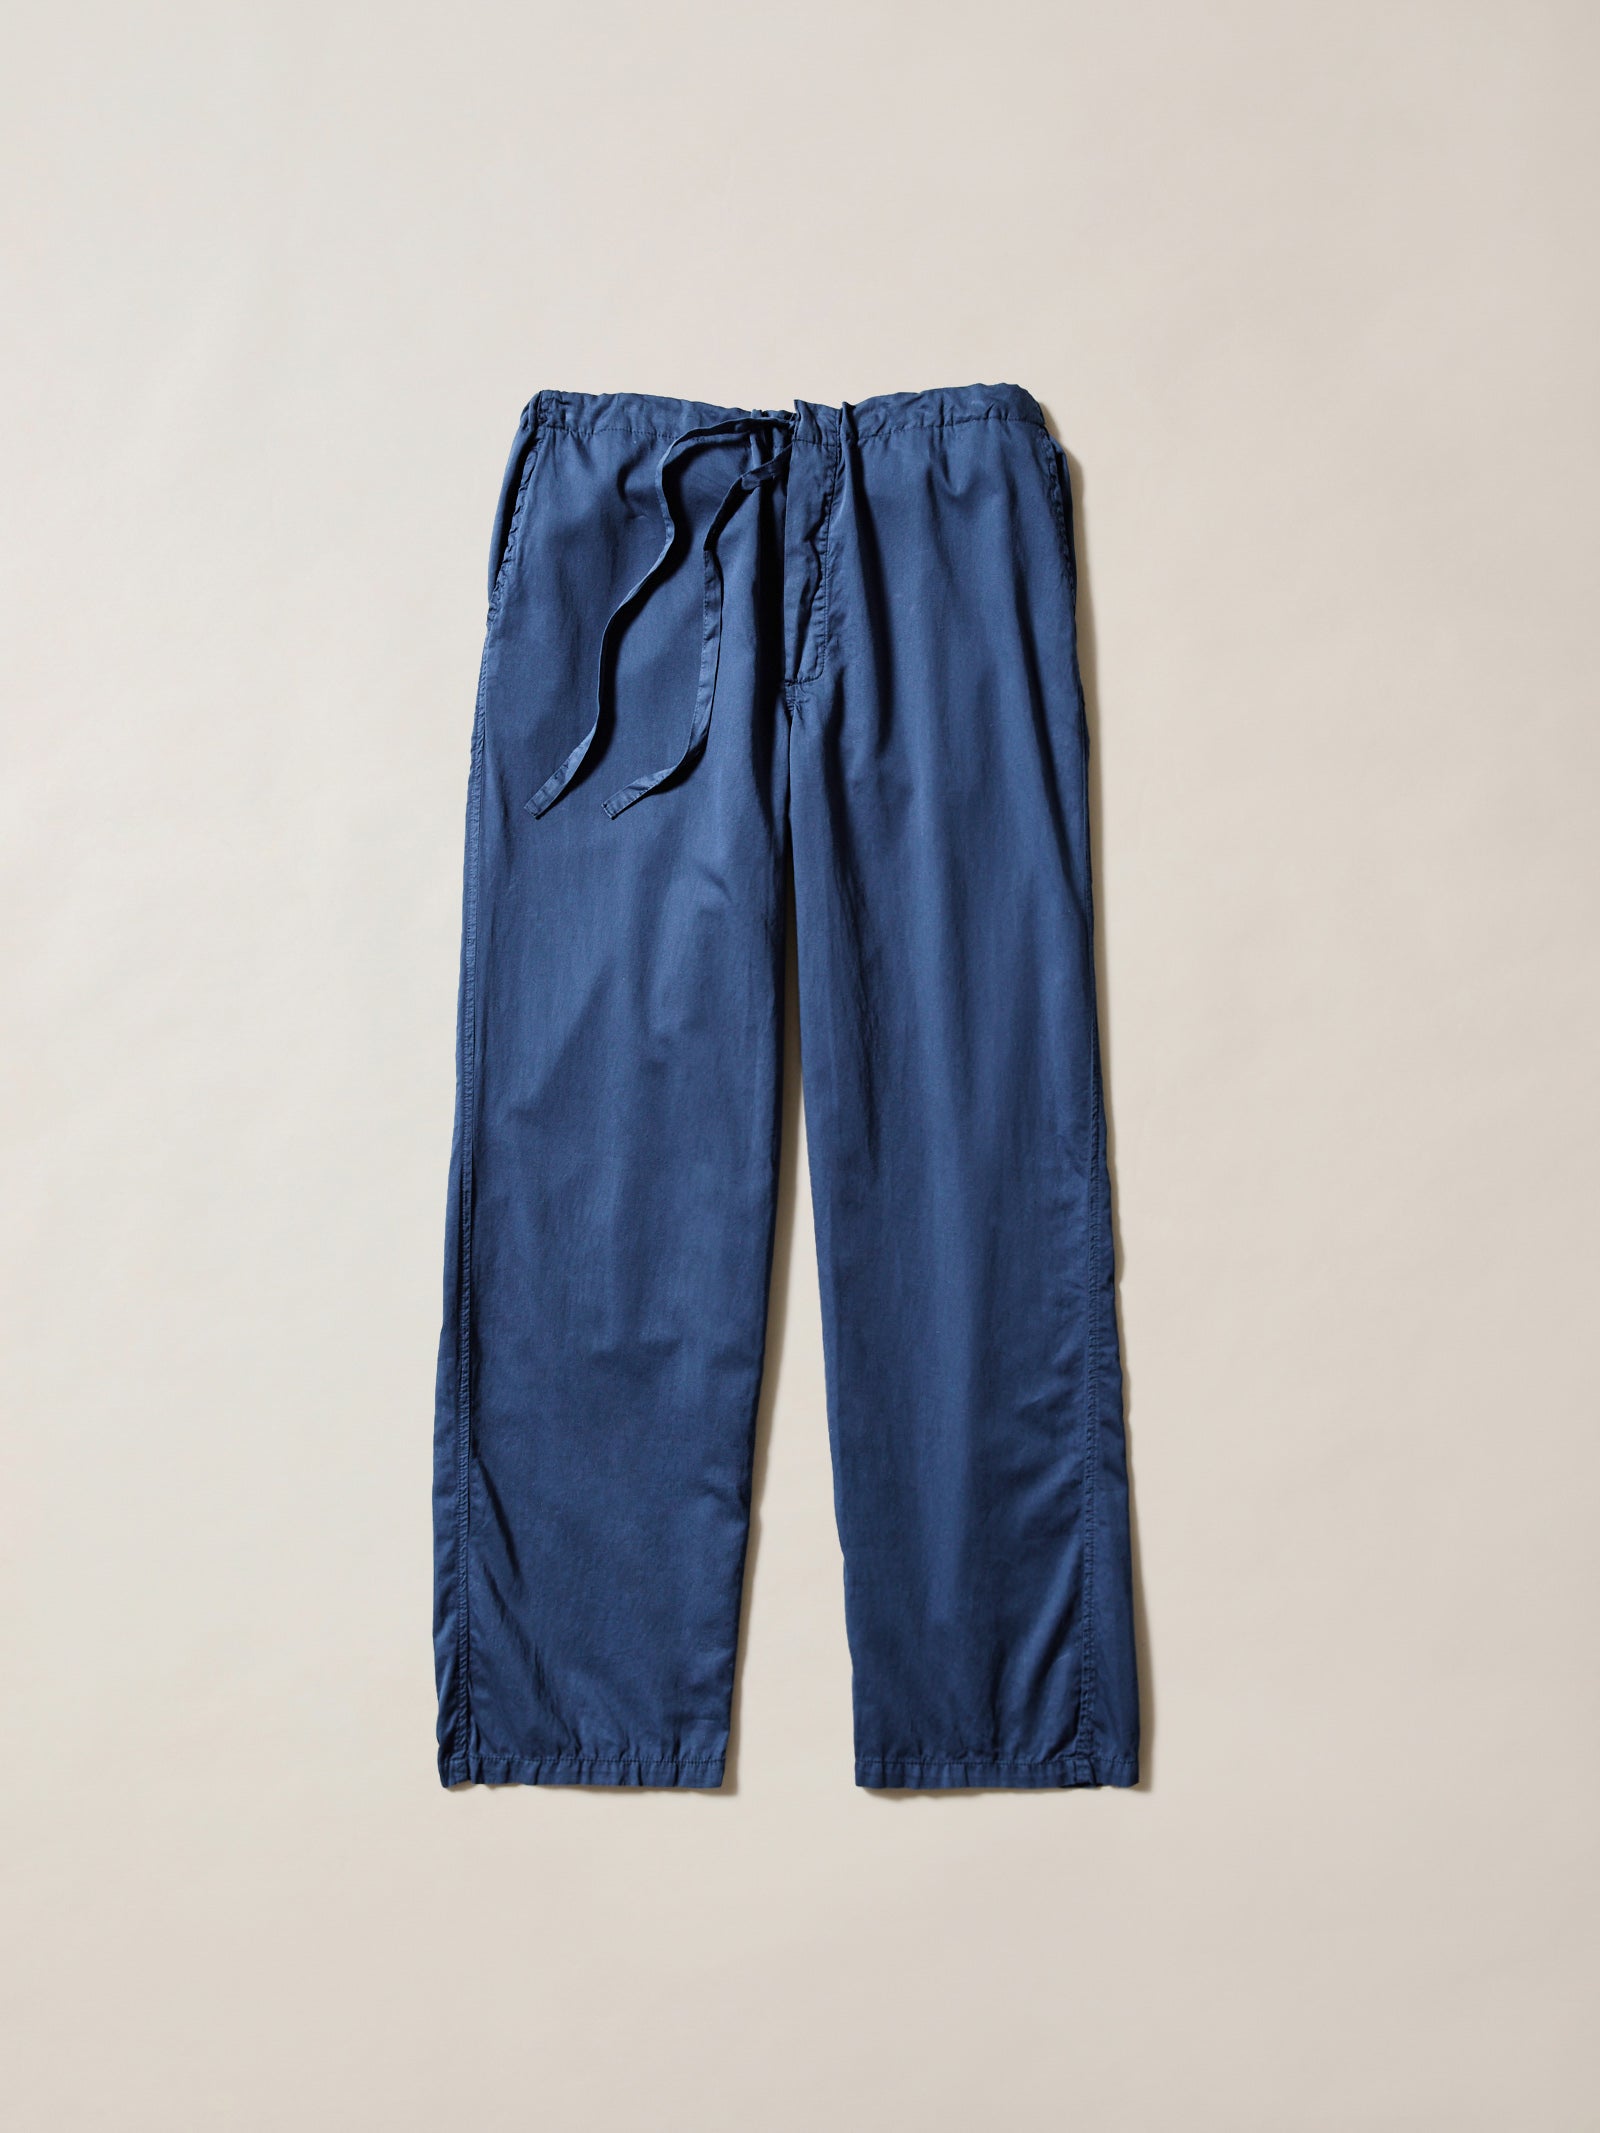 100% cotton navy cotton pyjamas, long pyjama pants, drawstring loungepants long